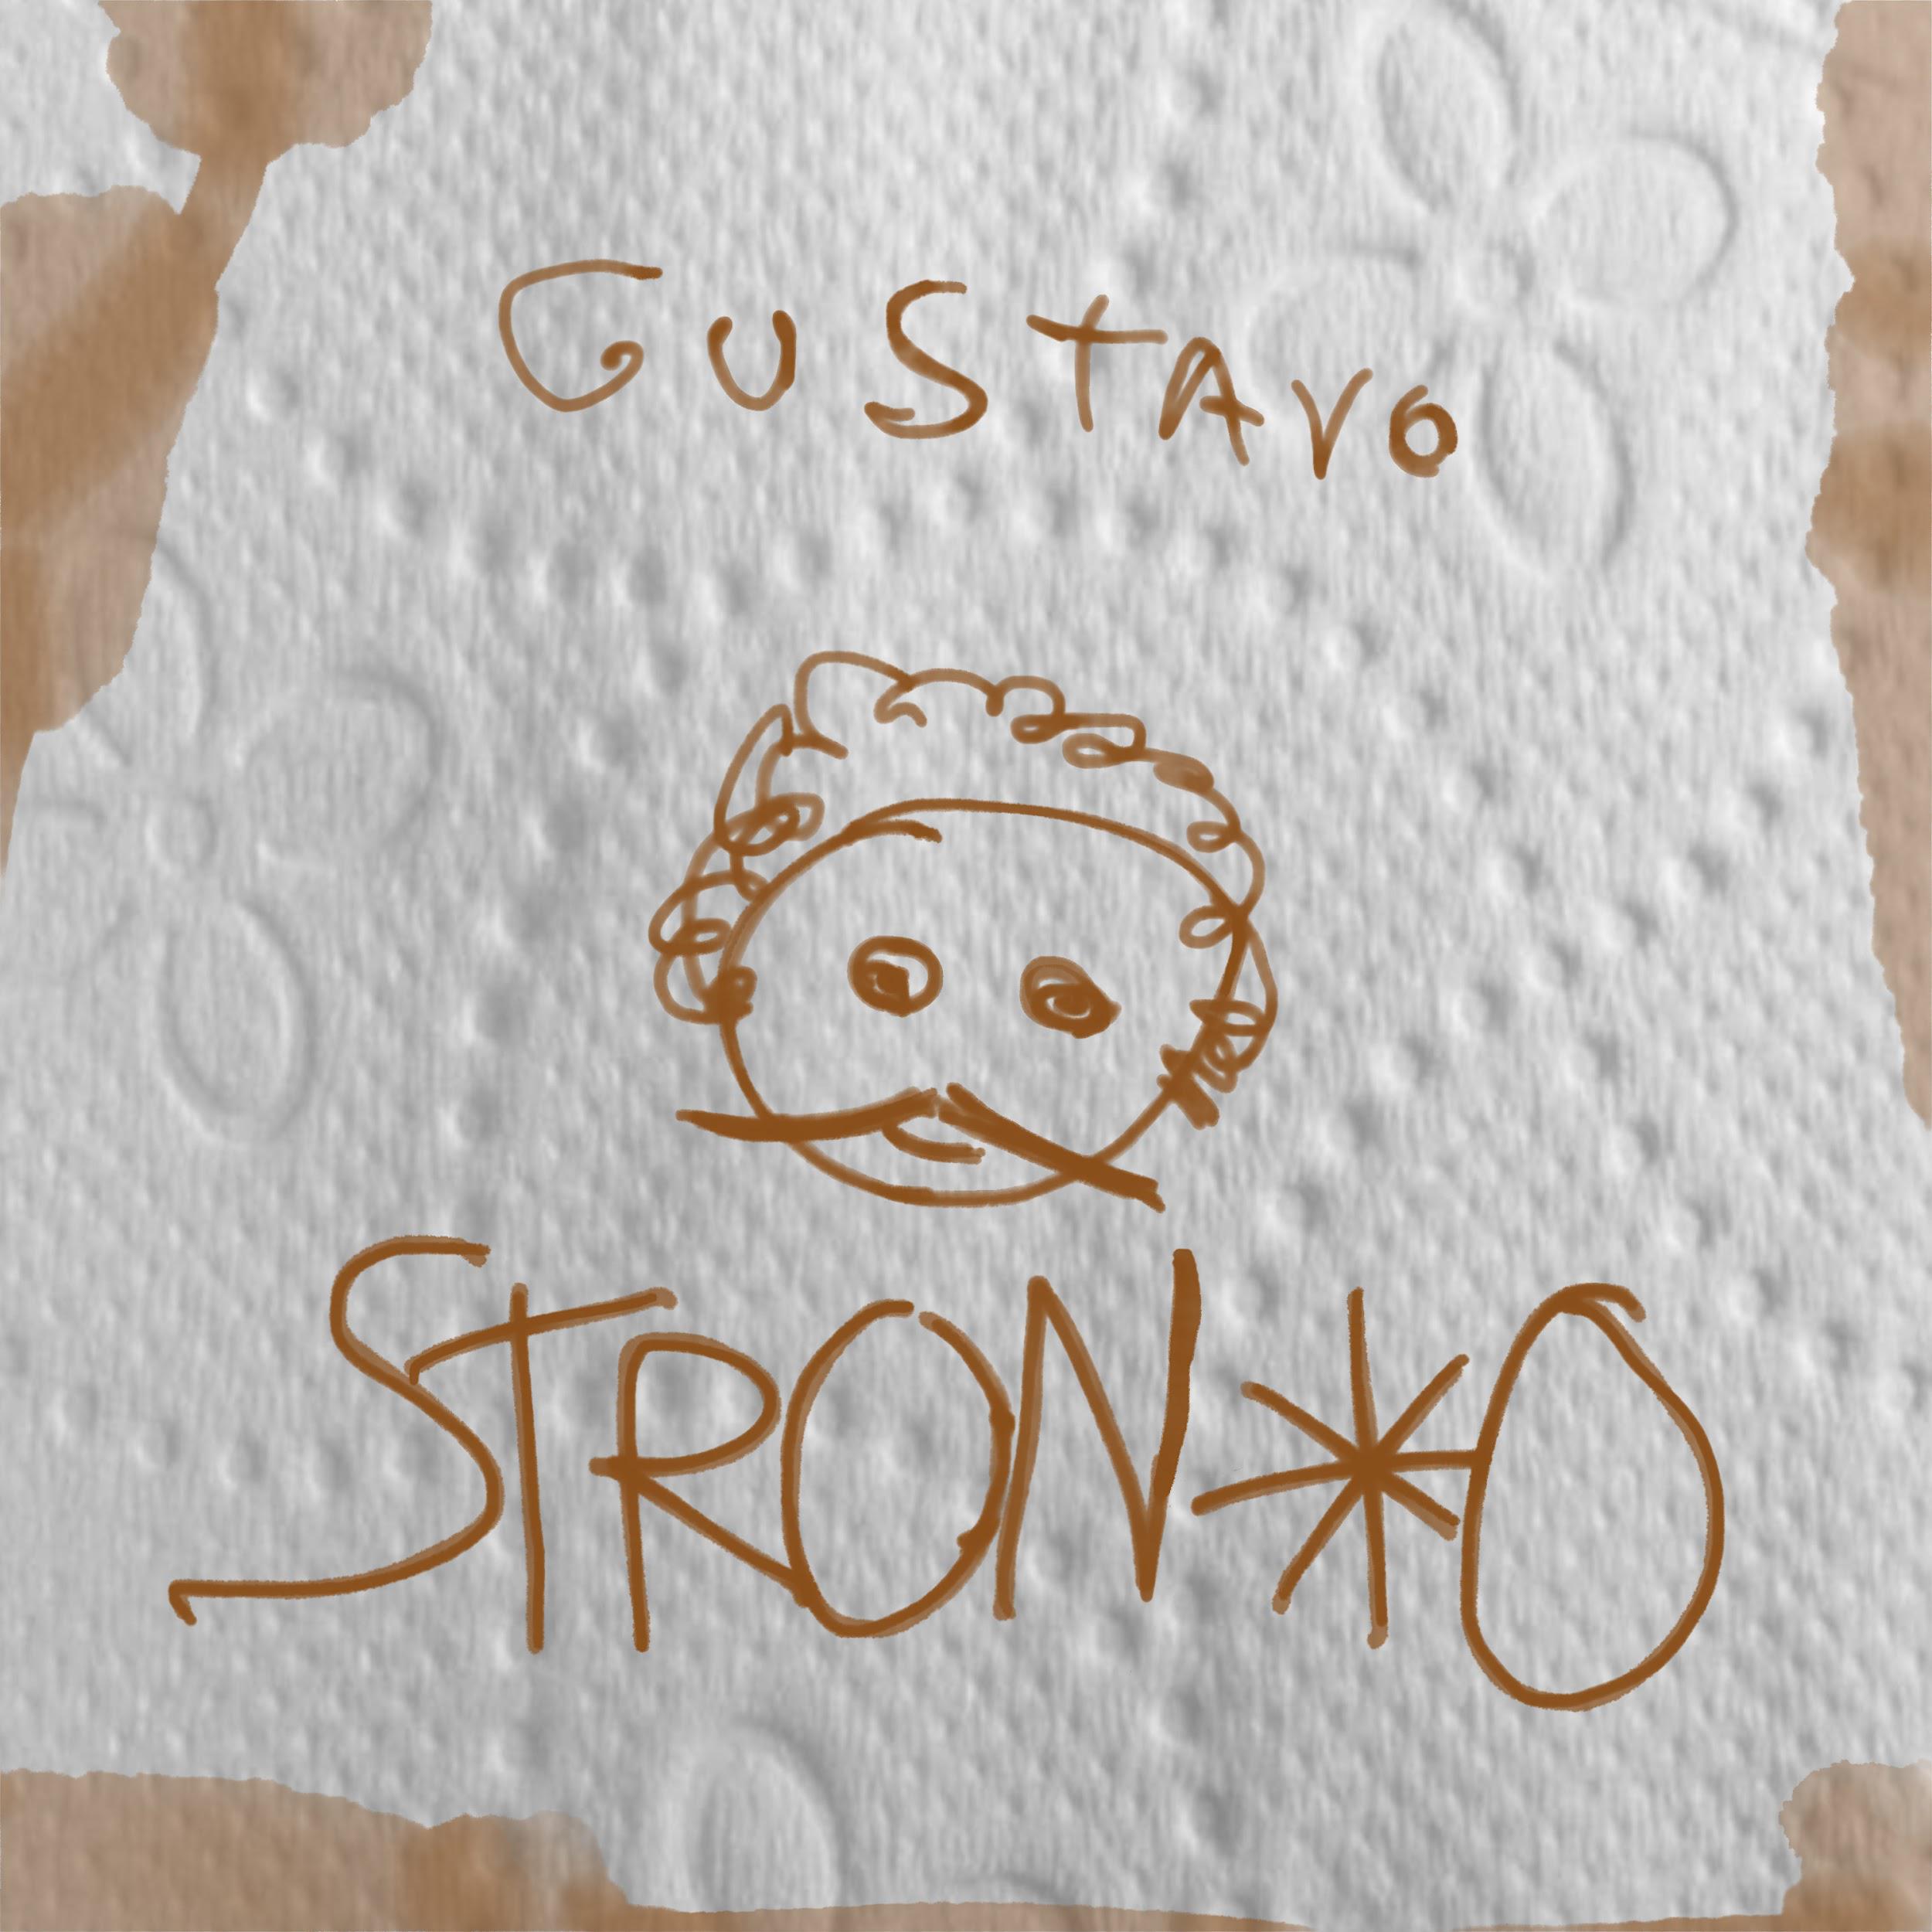 Al momento stai visualizzando Gustavo e il suo EP “Stron*o – un disco autobiografico”